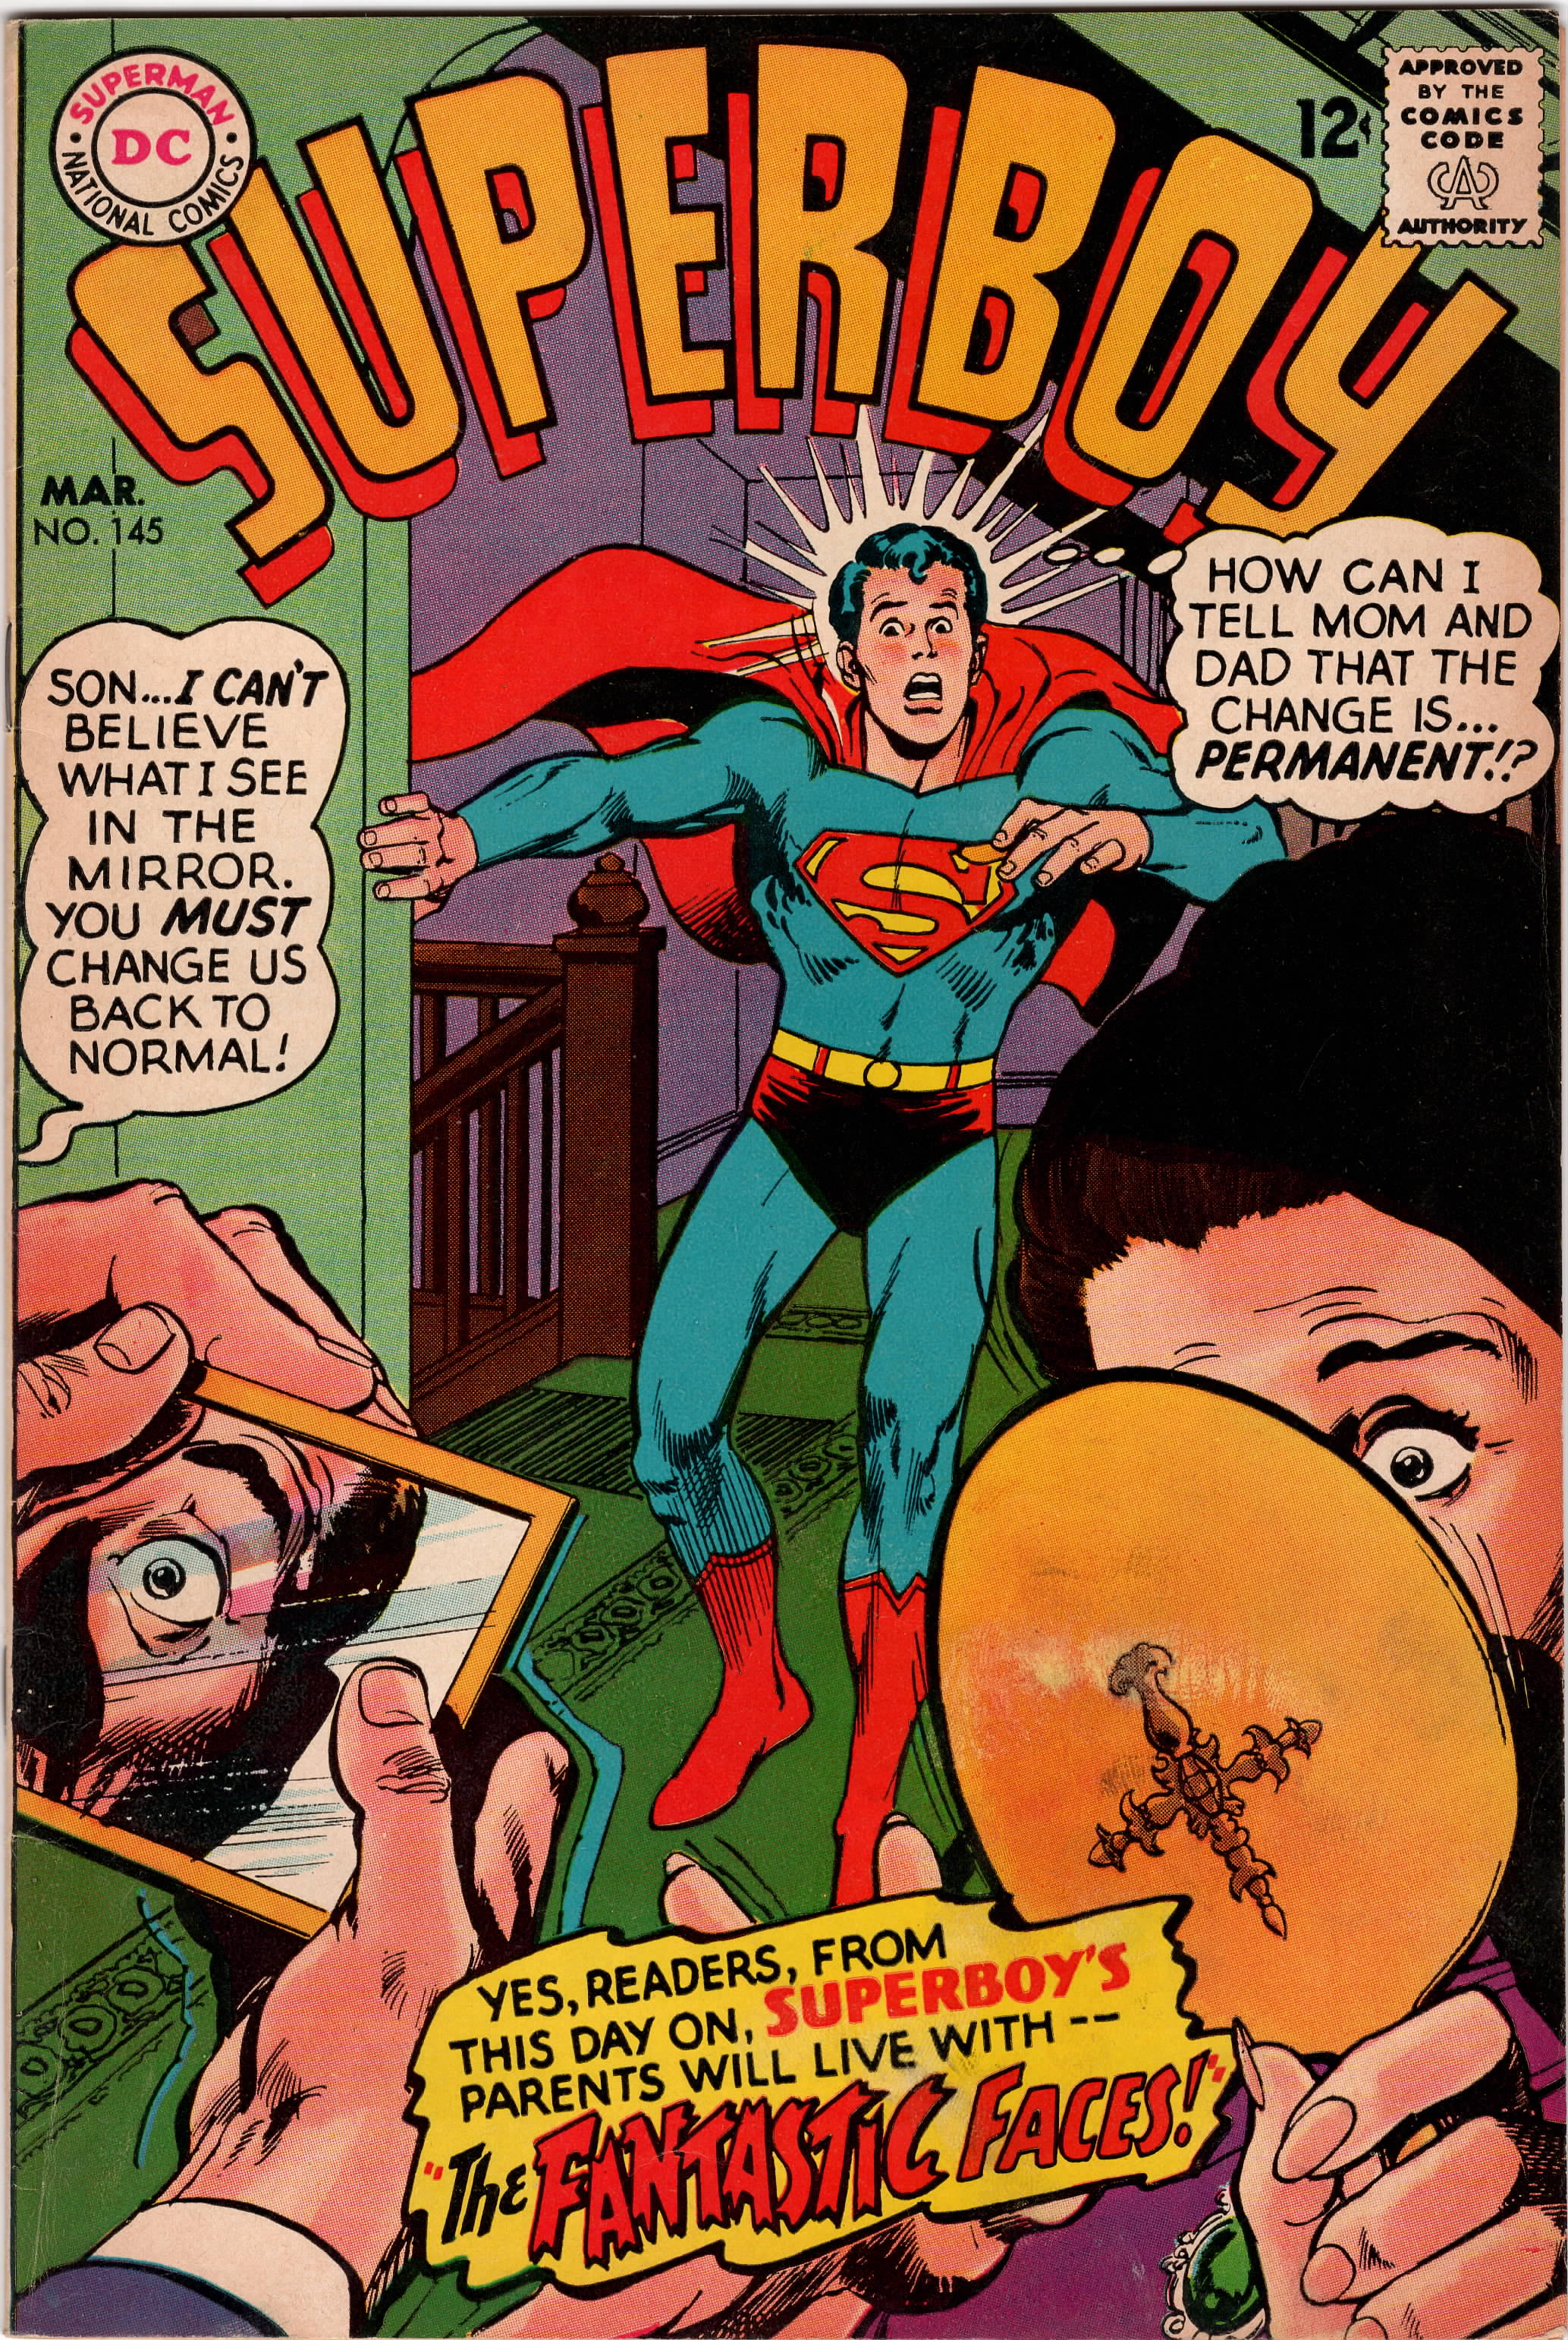 Superboy #145